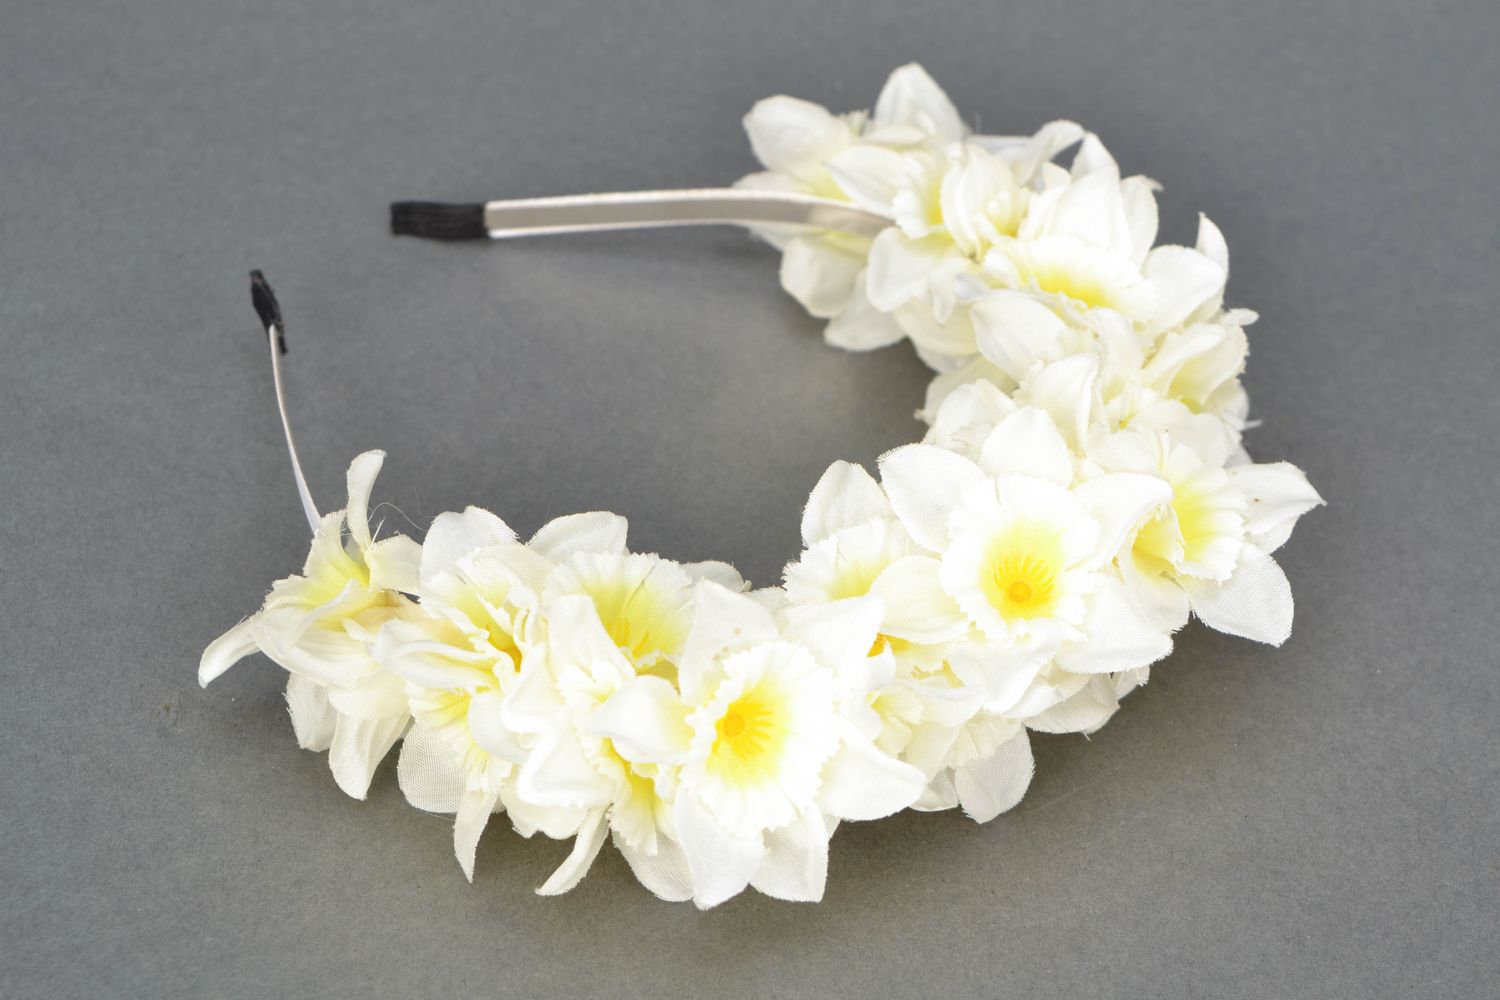 Cerceau cheveux aux fleurs blanches Narcisses photo 1